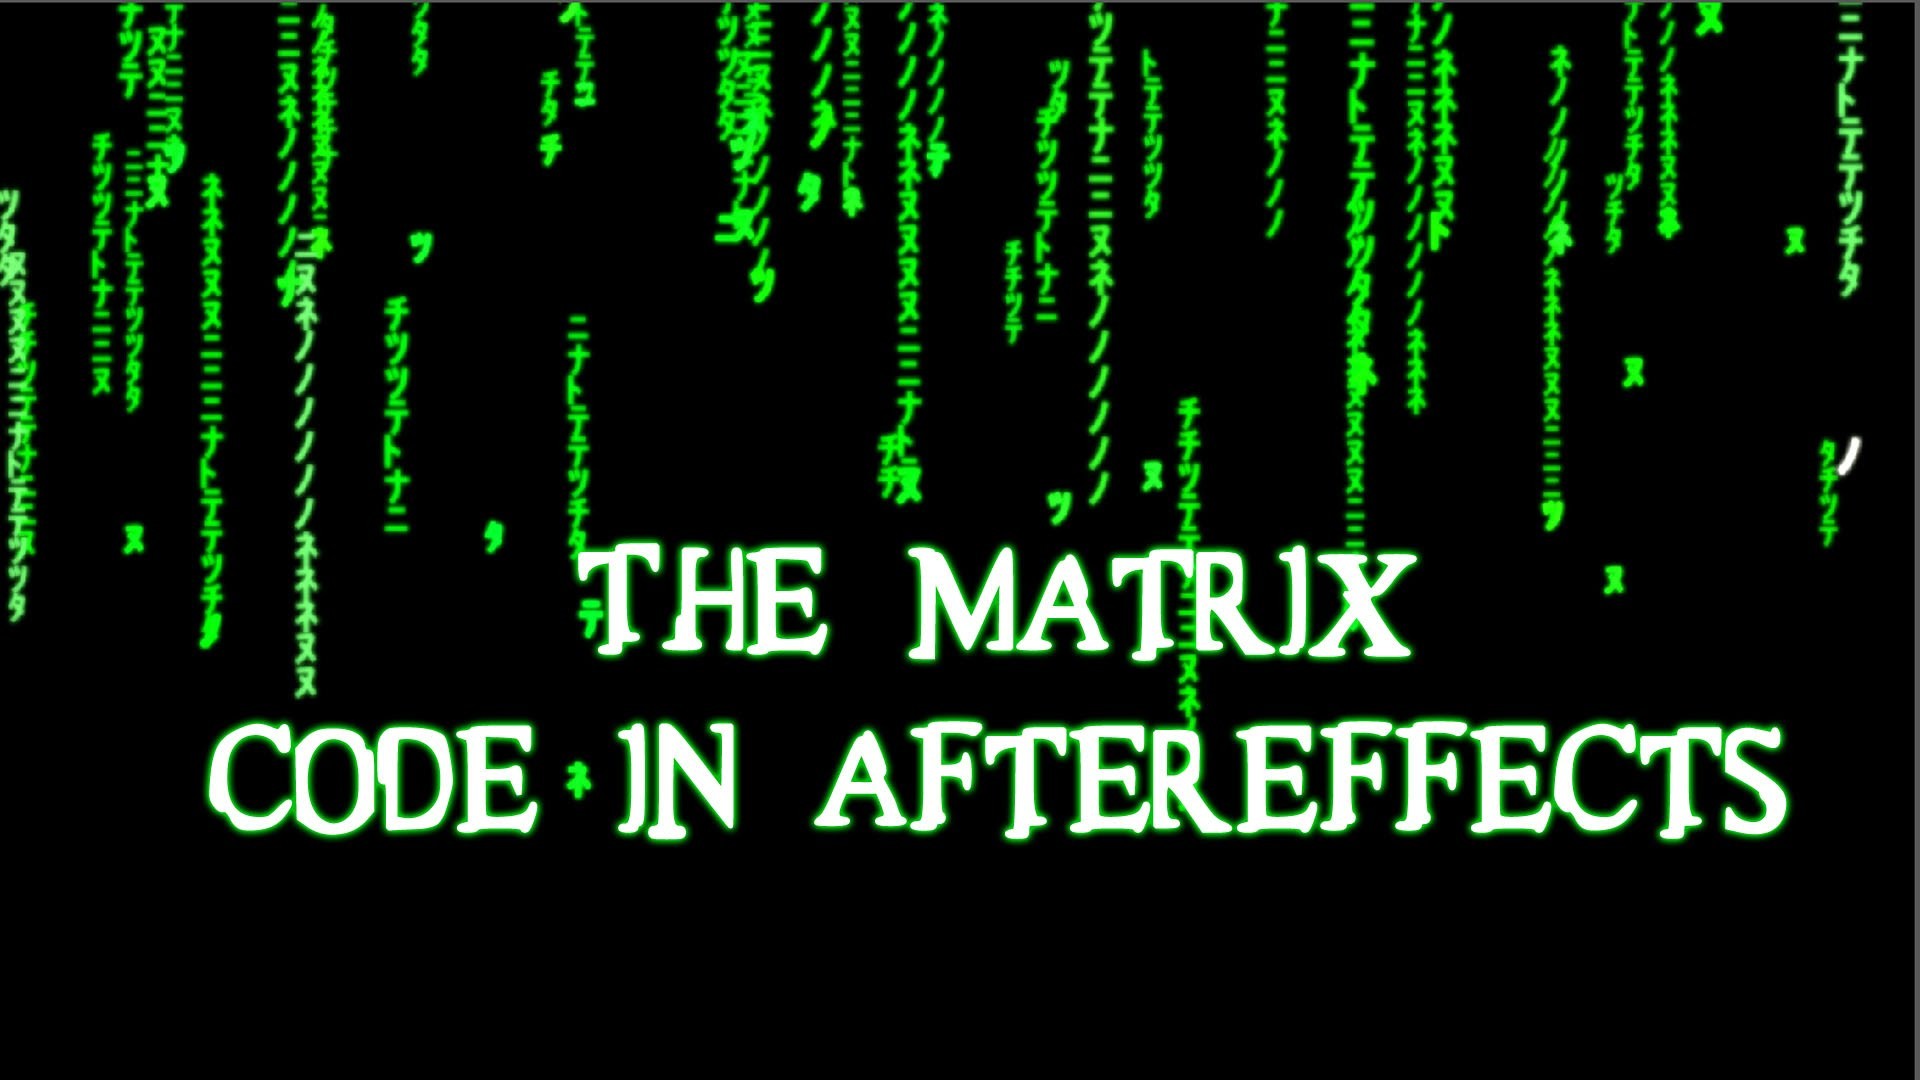 1920x1080 THE MATRIX (MACHINE) CODE IN AFTEREFFECTS - TUTORIAL/Ð¡ÐÐÐÐ£Ð§ÐÐ¢ÐÐÐ¬ - YouTube